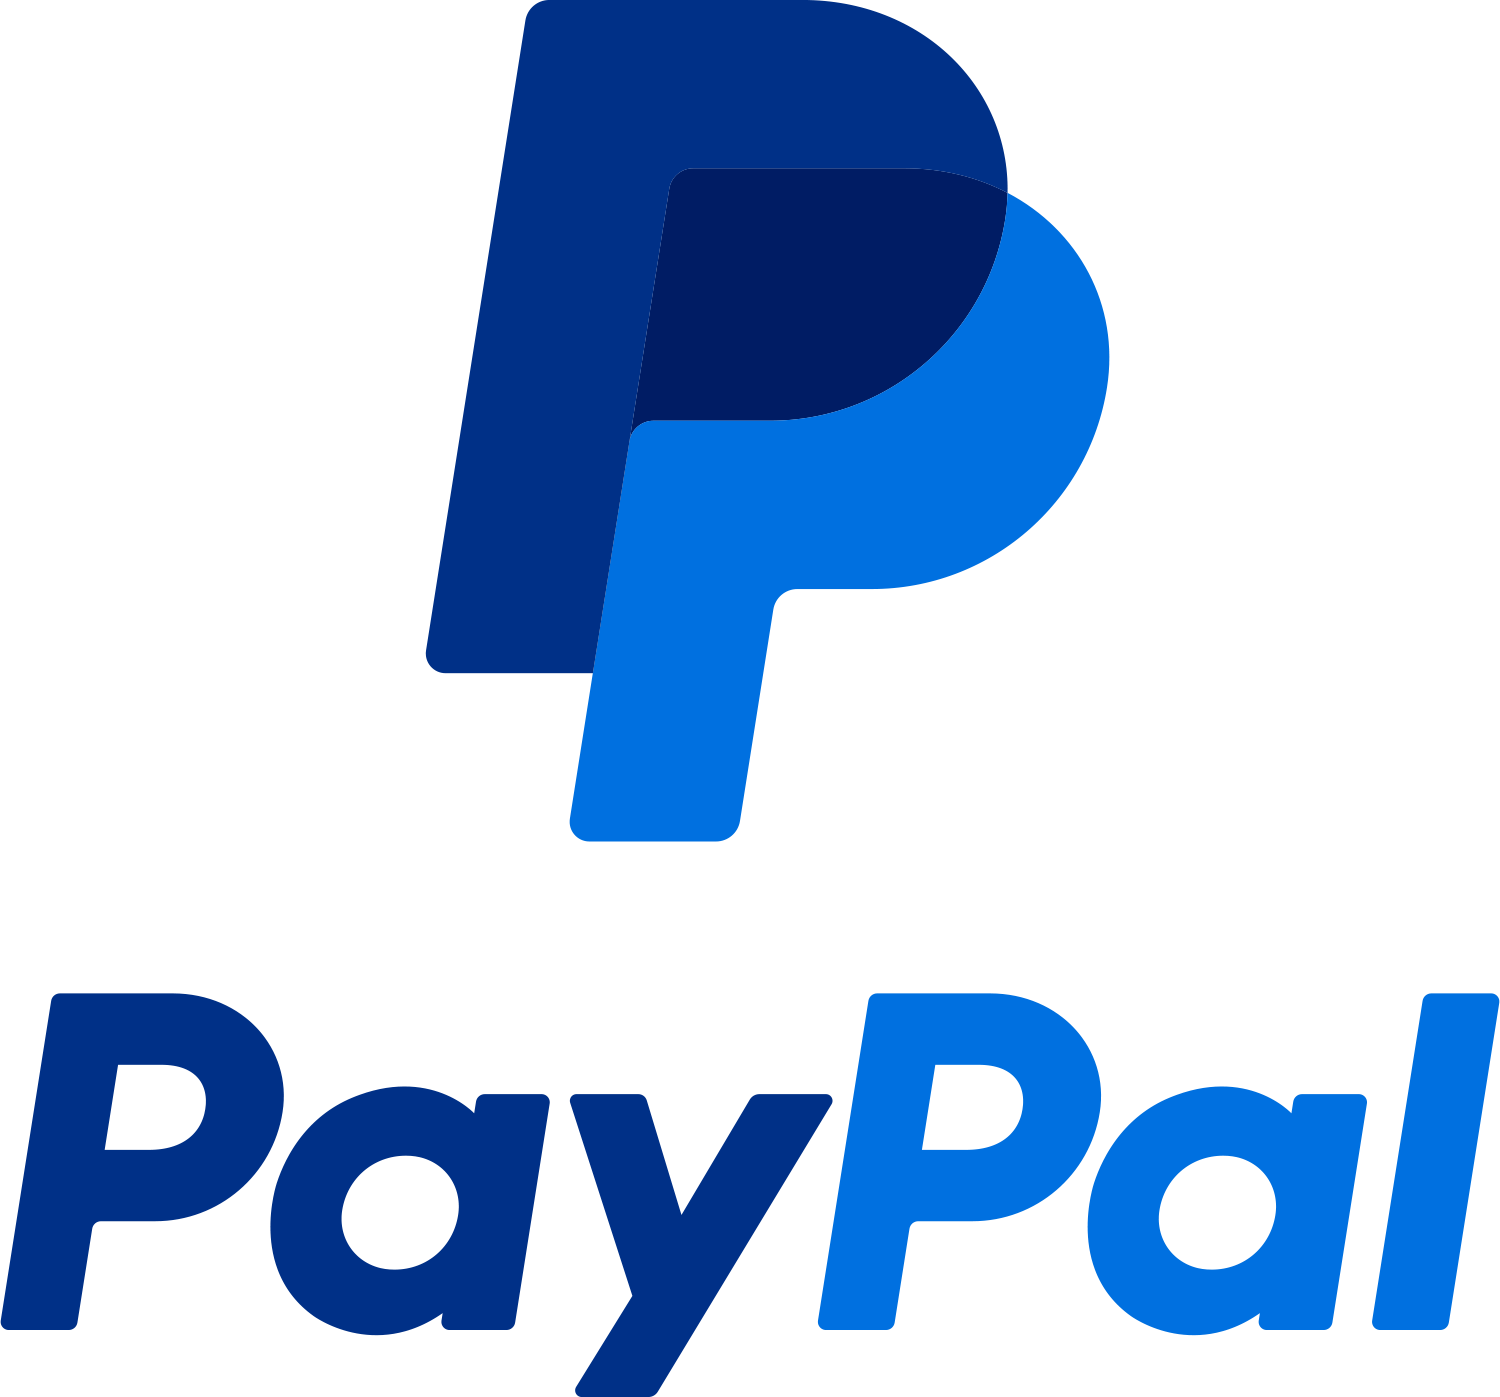 Nach Paypal Hackerangriff: Paypal informiert betroffene Nutzer